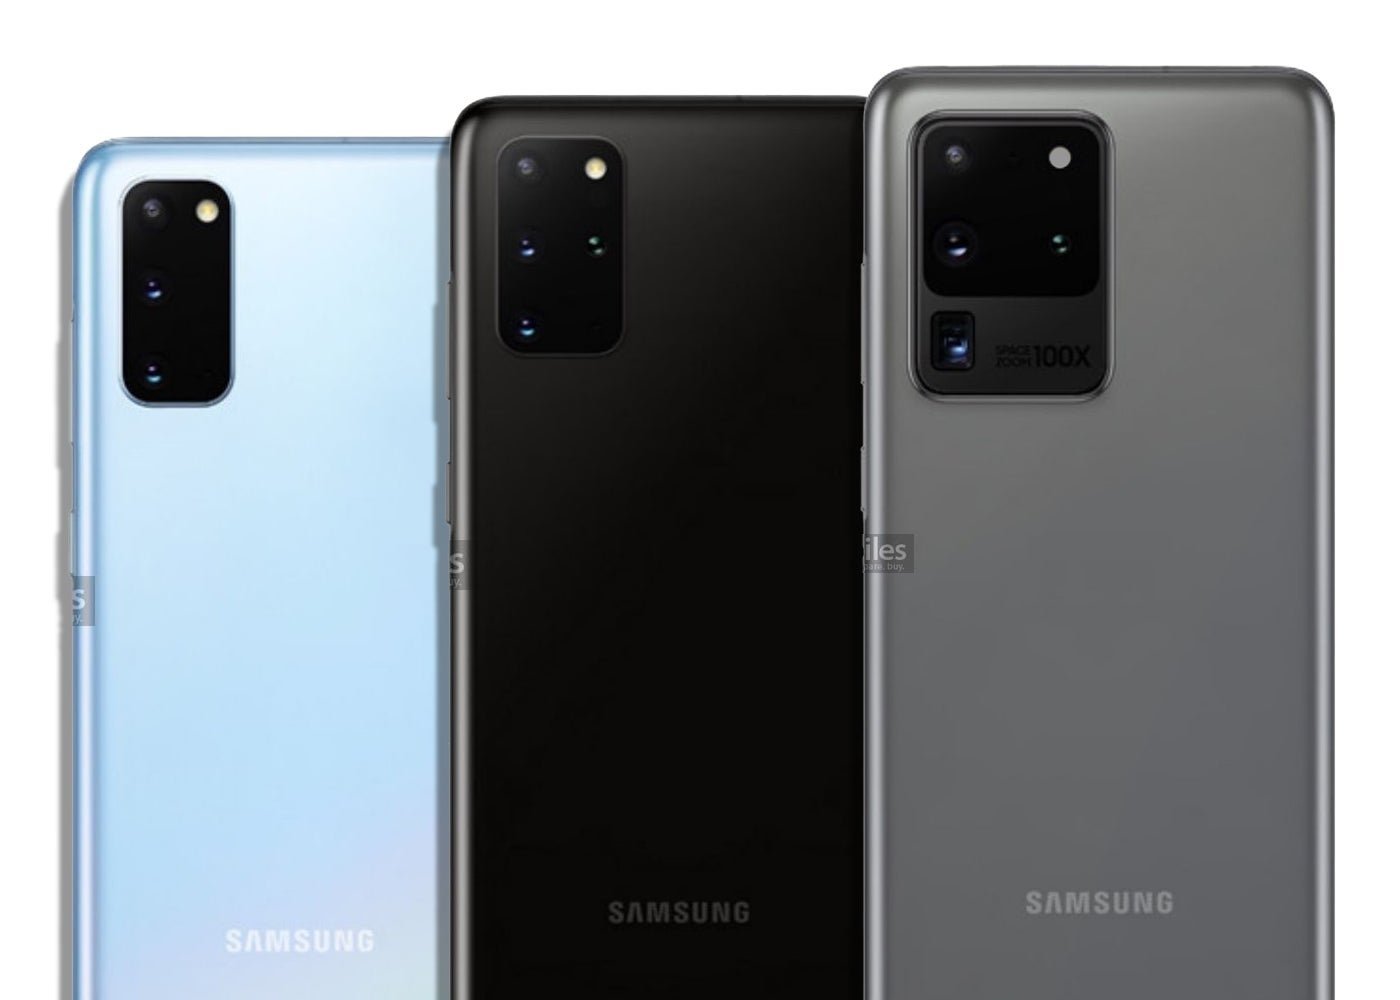 Samsung Galaxy S20, S20+ y S20 Ultra: imágenes oficiales filtradas